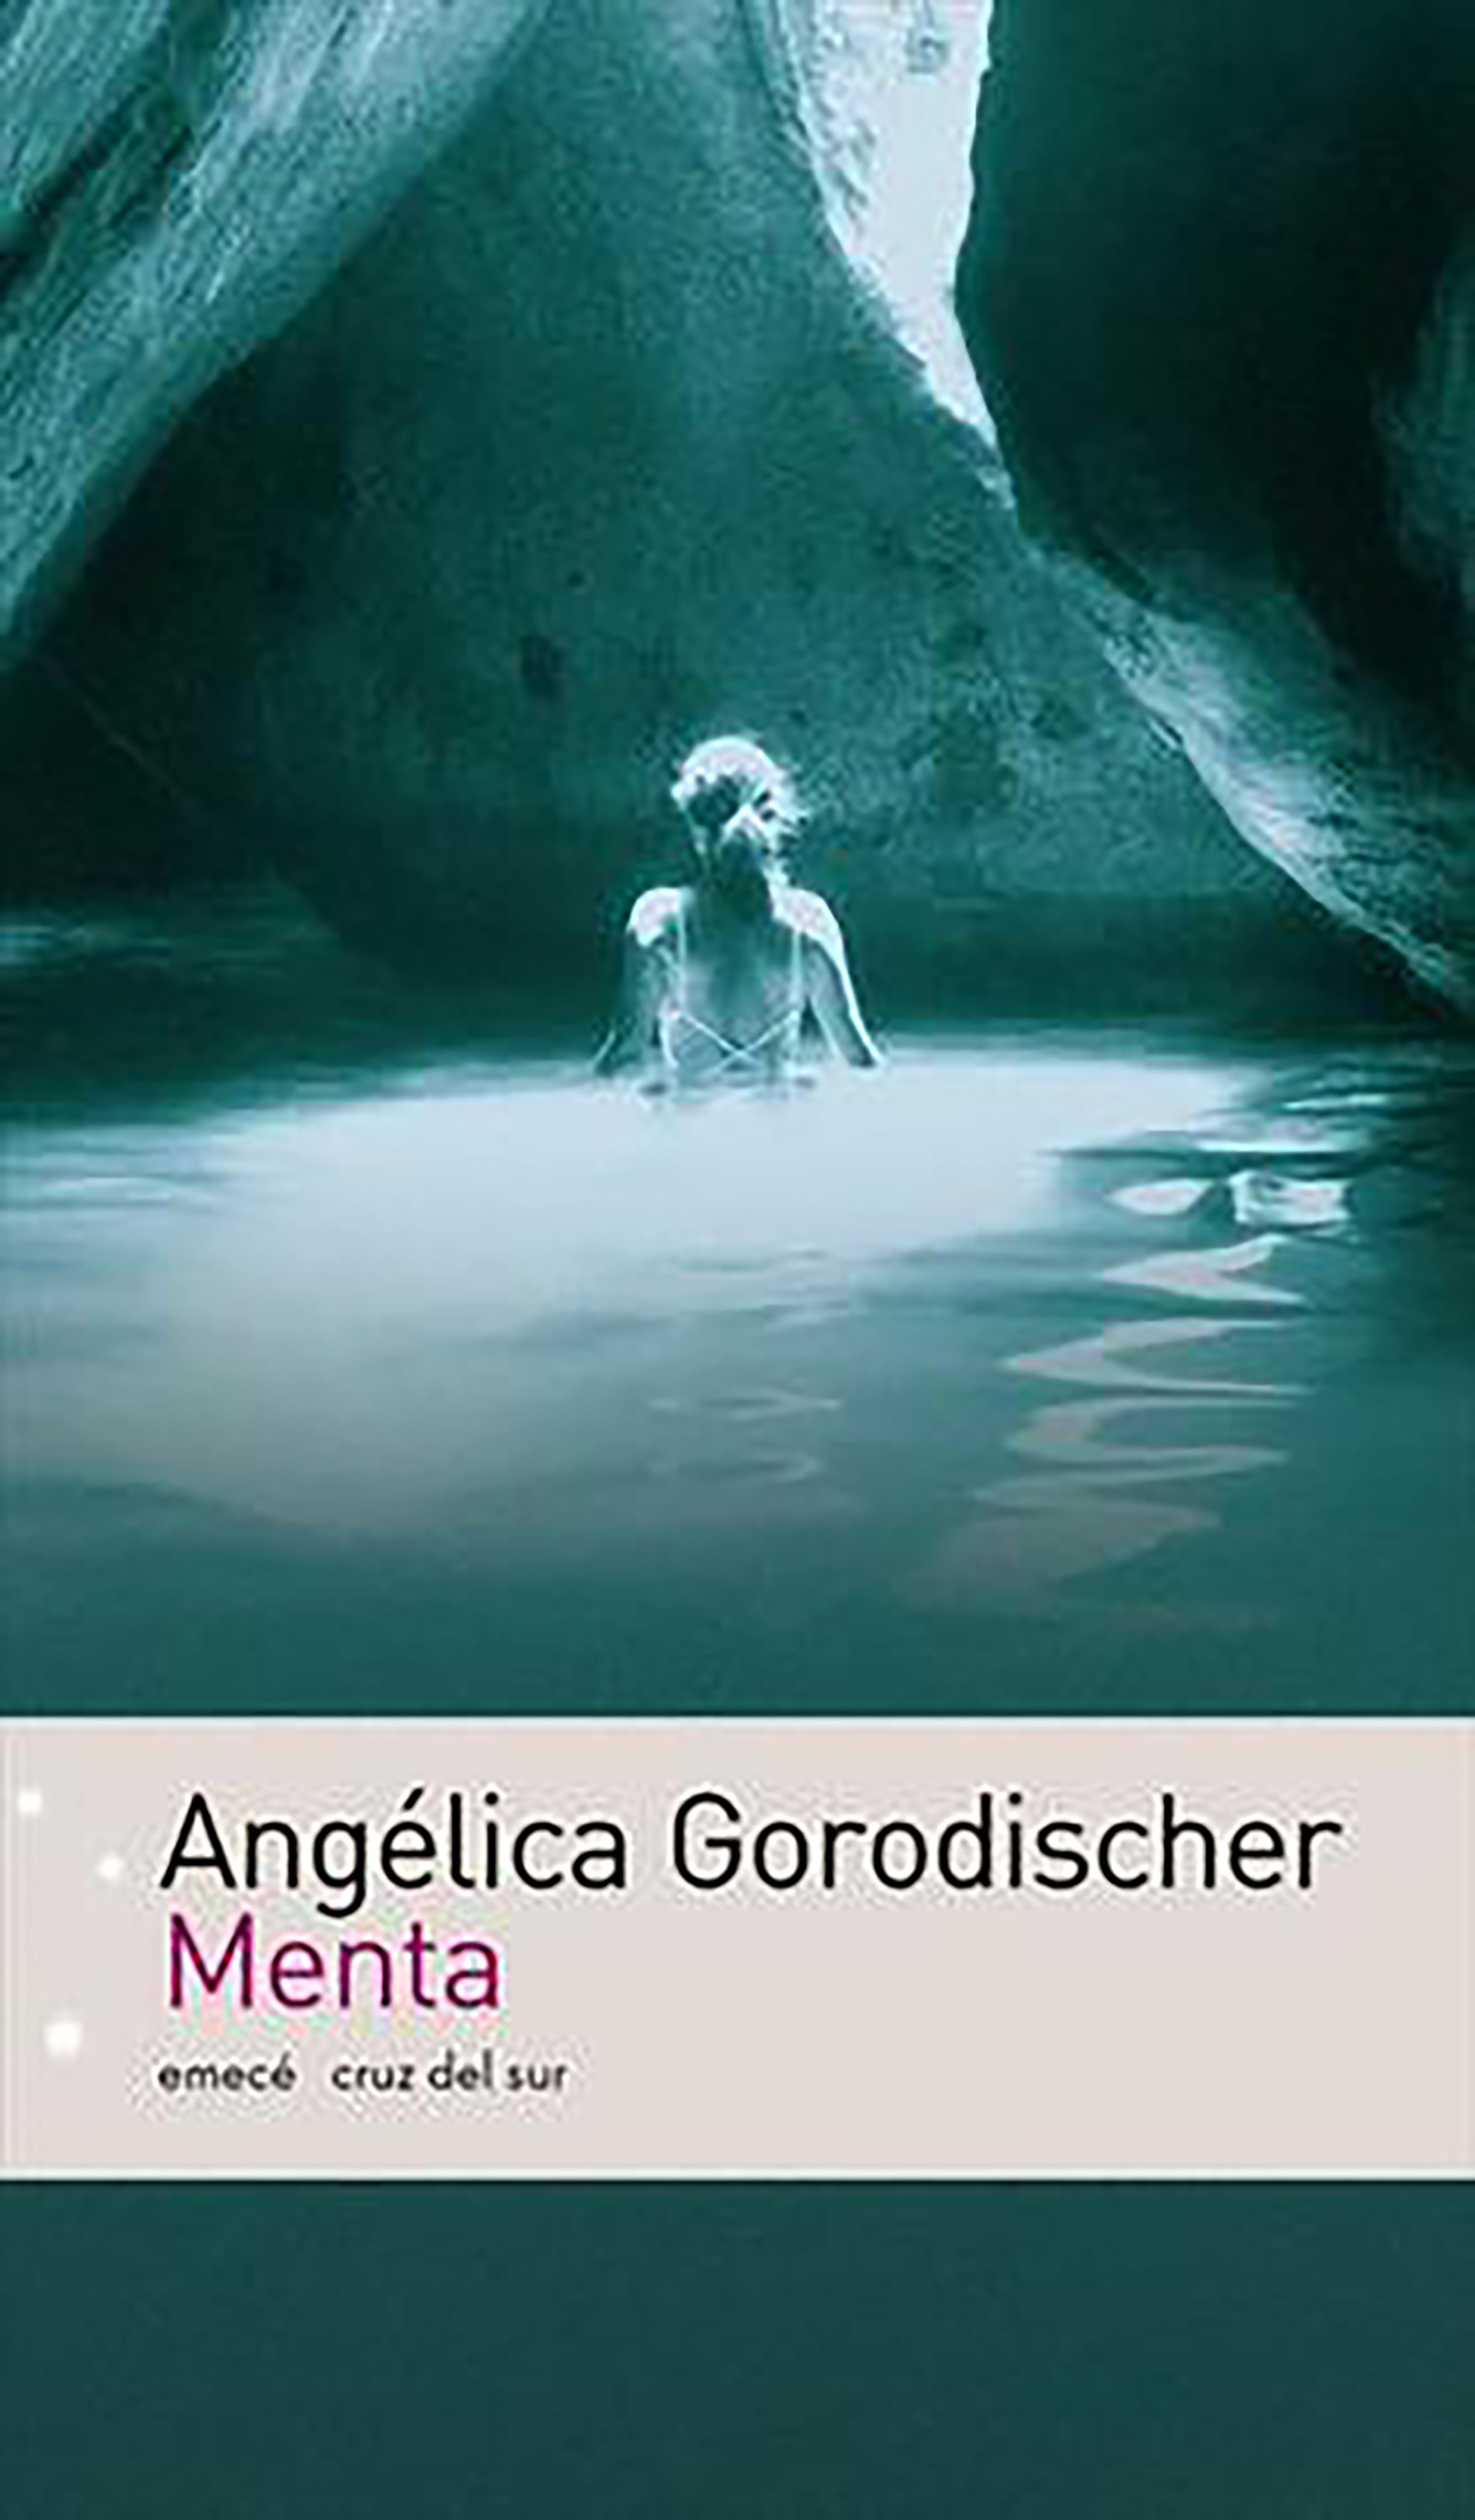 "La naturaleza es una madre cruel" pertenece a "Menta" (Emecé), de Angélica Gorosdicher 